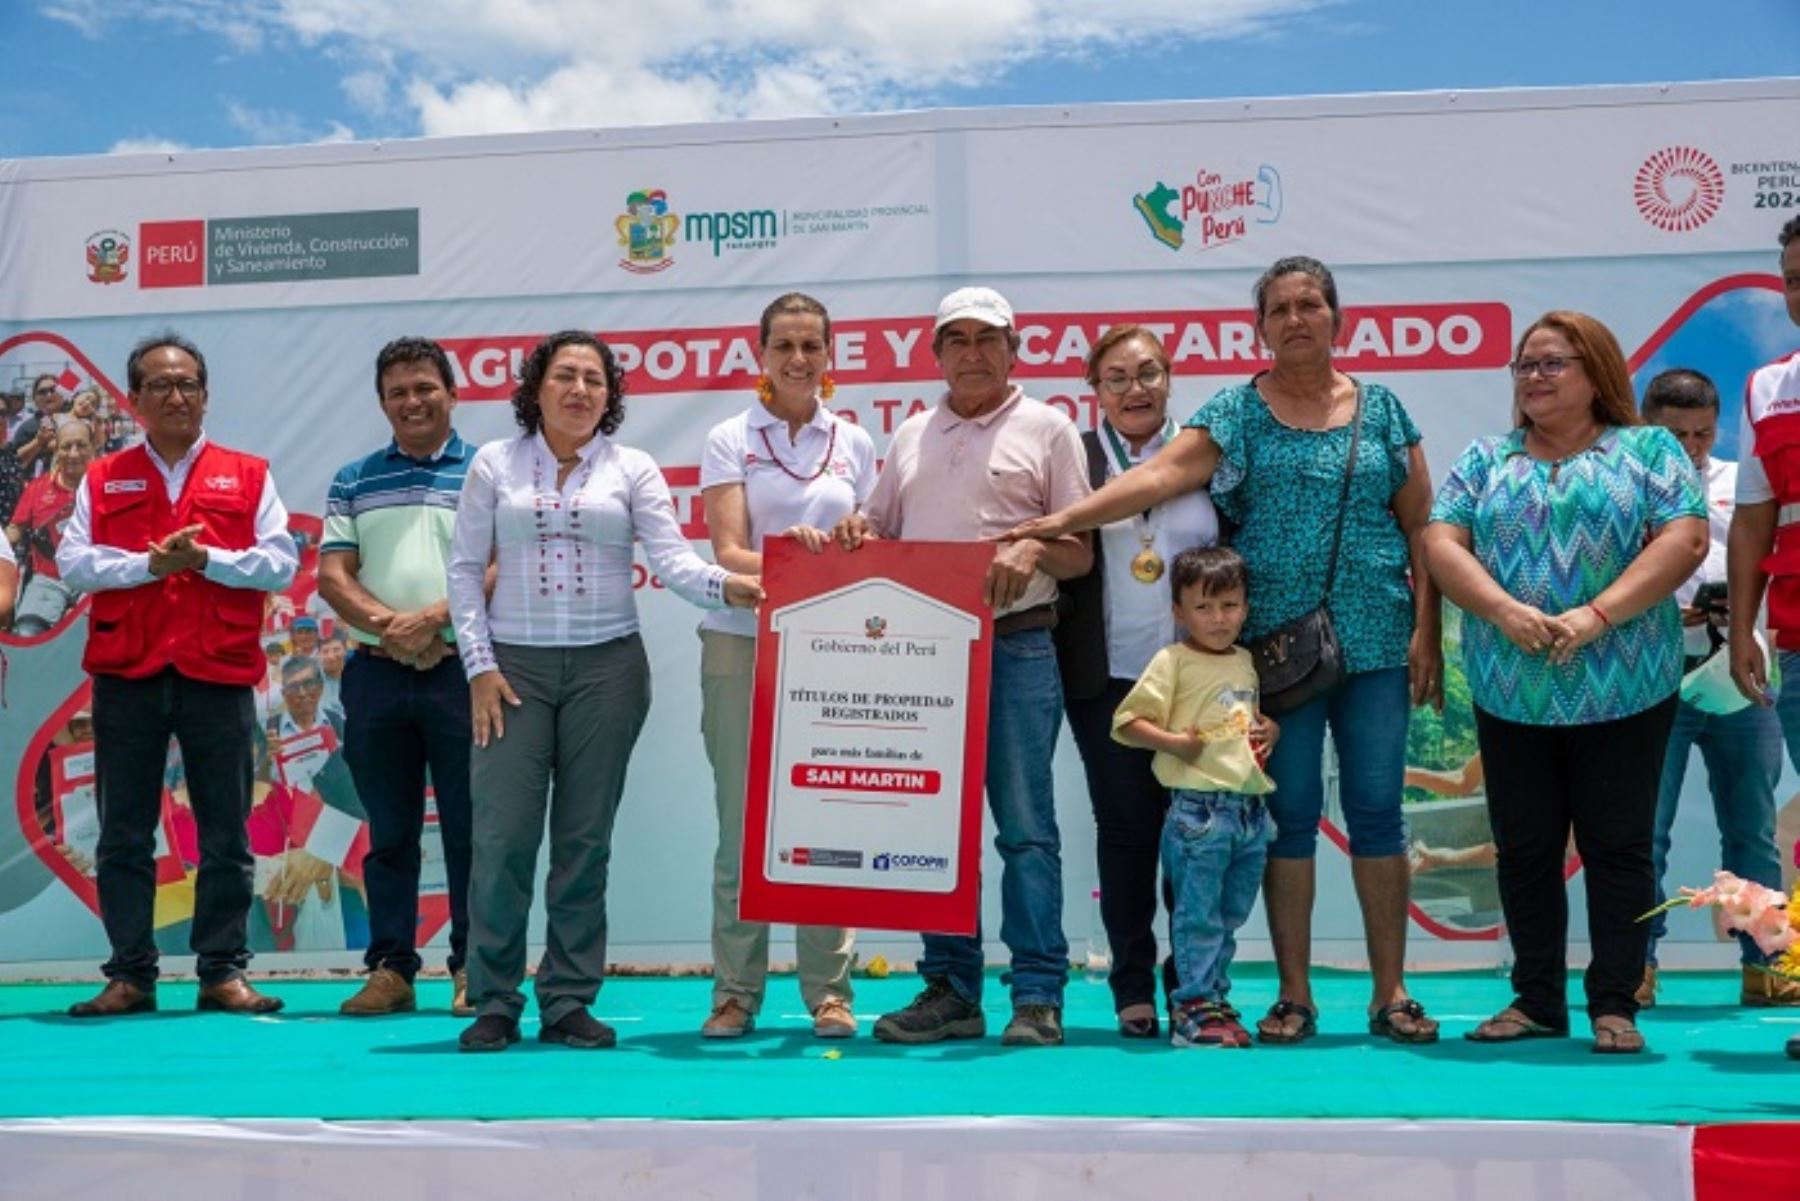 San Martín:Vivienda entrega 1,700 títulos de propiedad y va cerrando brechas en titulación